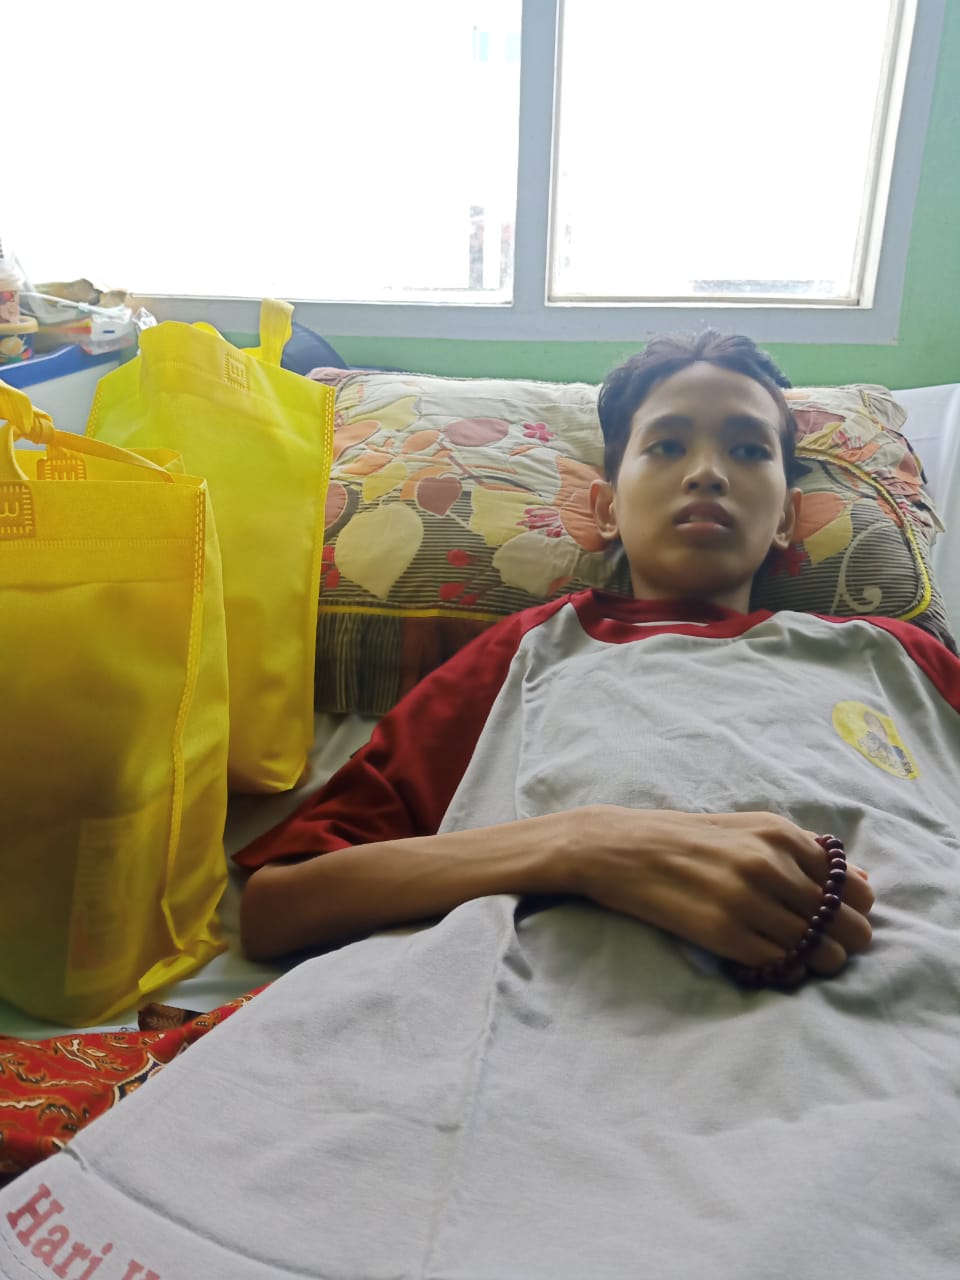 Mantan pesepakbola U-13 Raditya Alvaro, pasca operasi amputasi kaki, istirahat dengan tasbih di tangan, Selasa (1/6/2021).